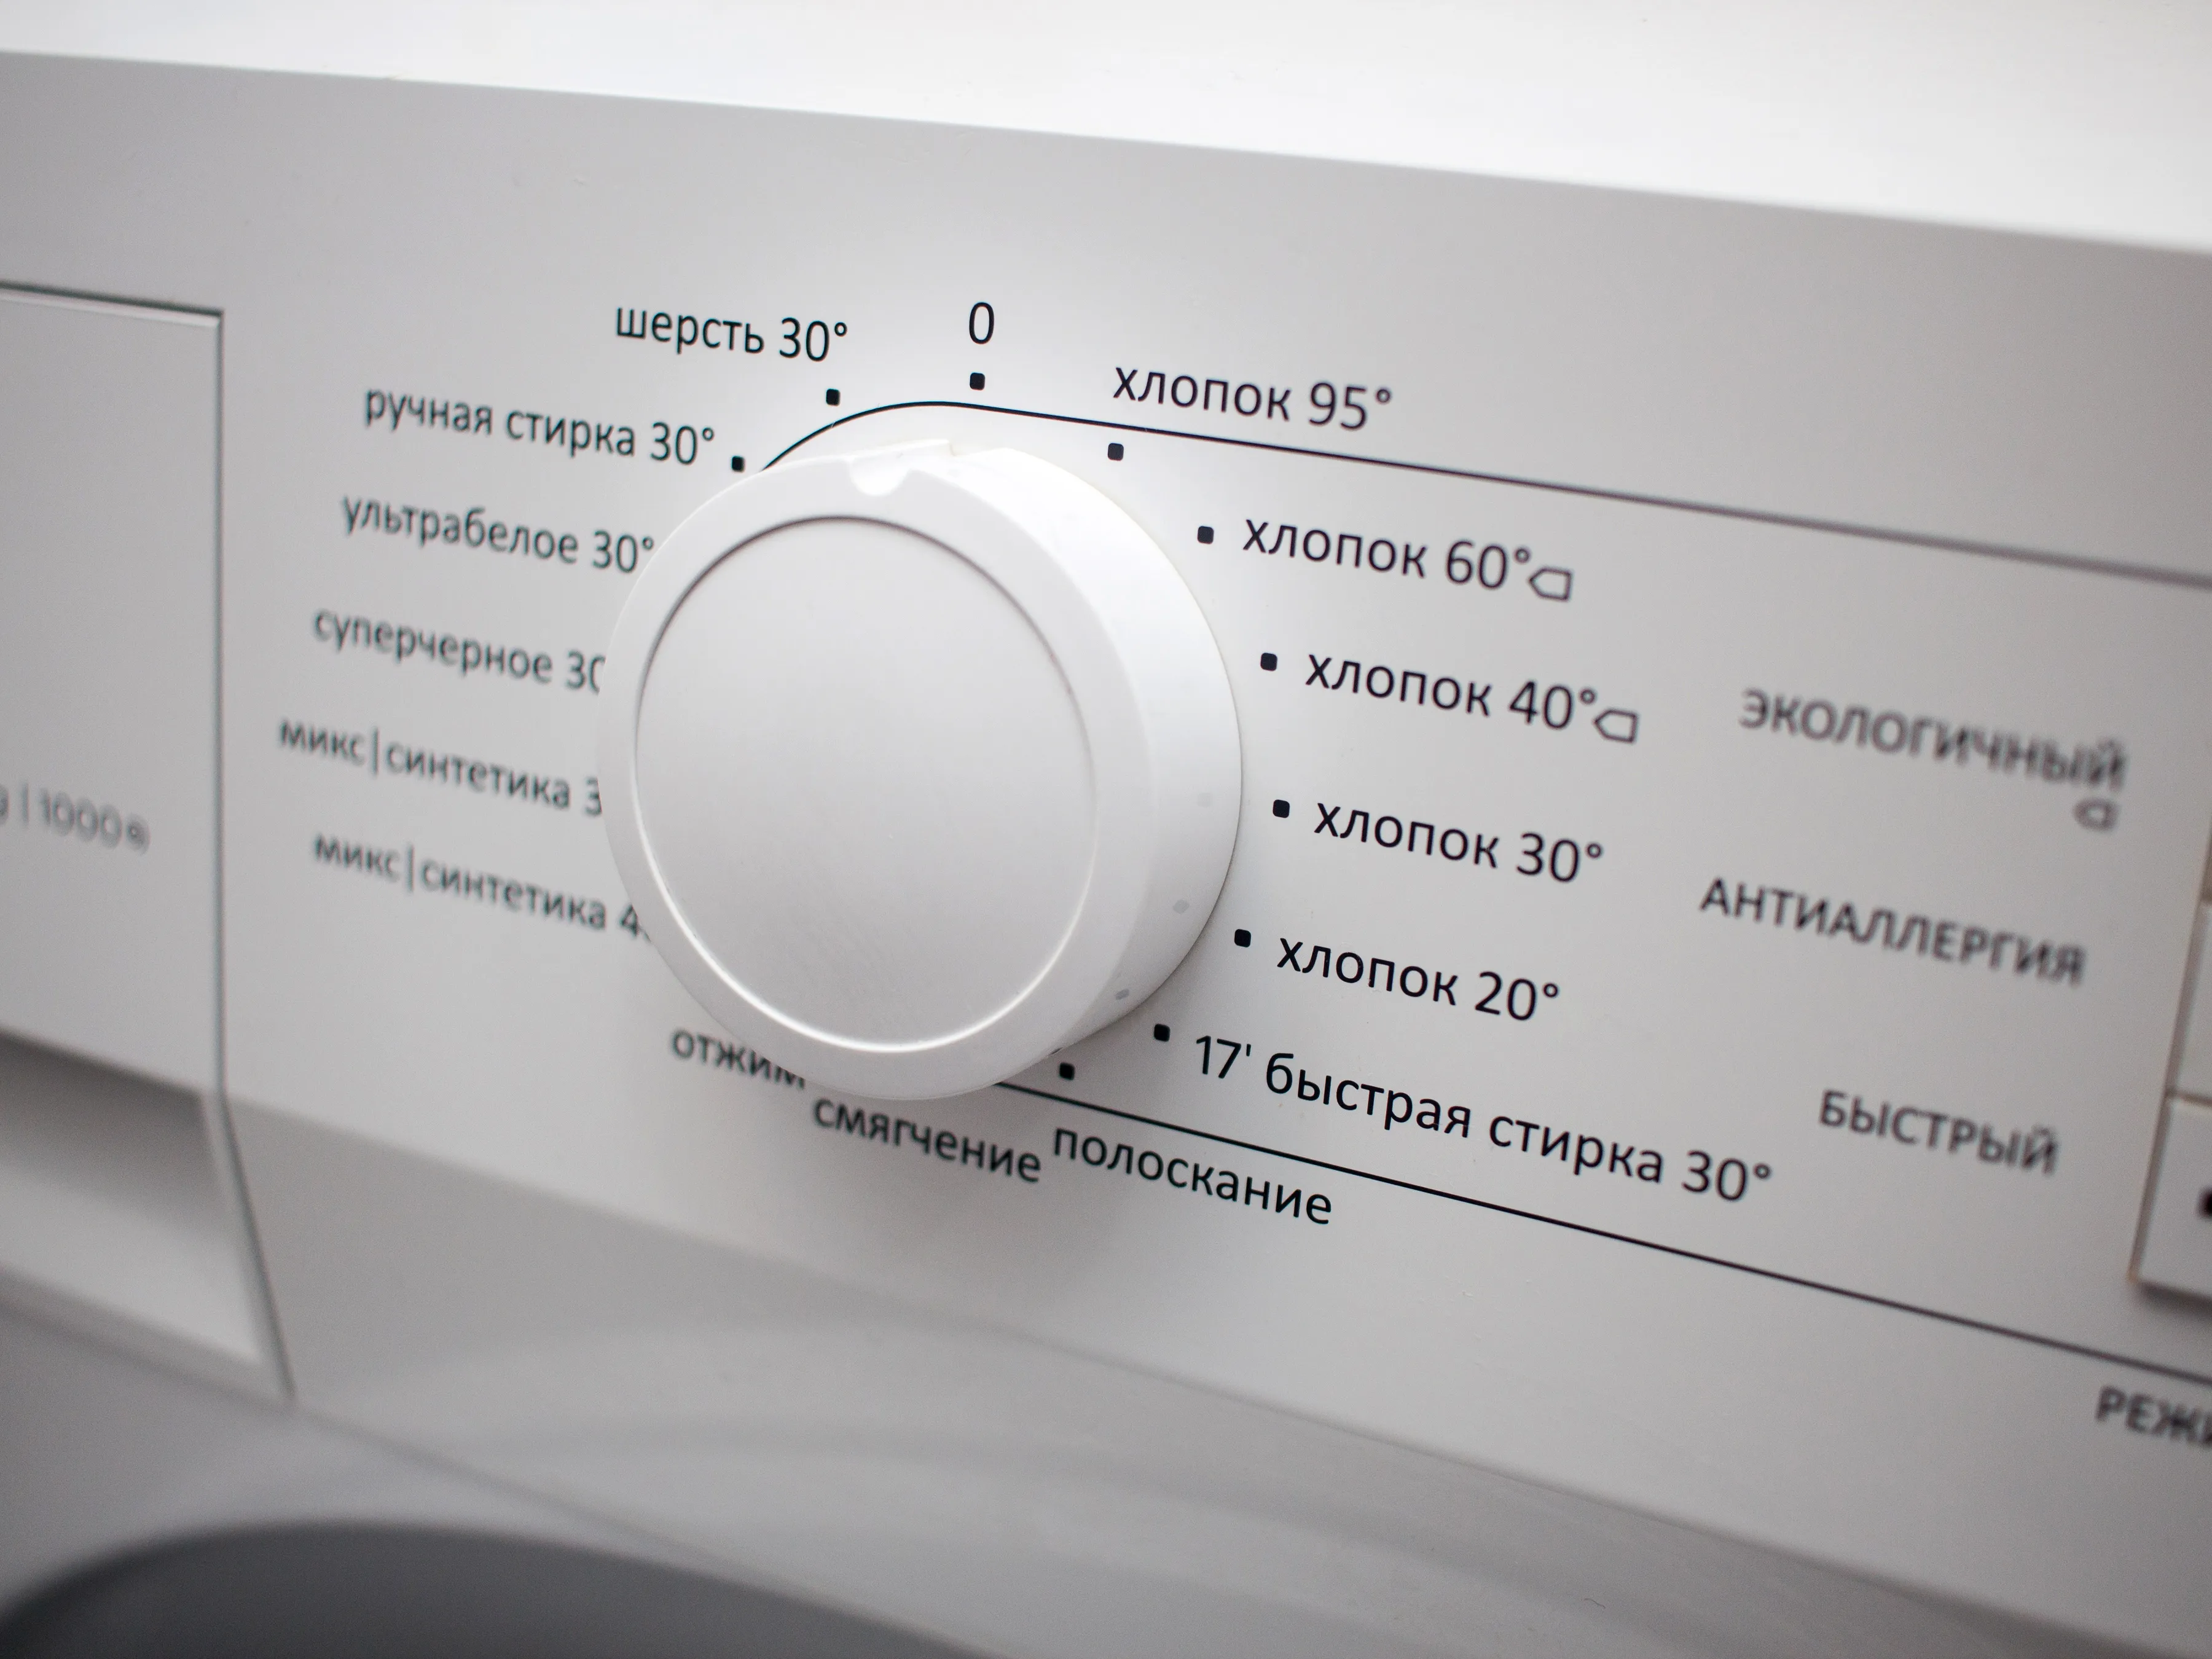 Панель керування з режимами роботи пральної машини